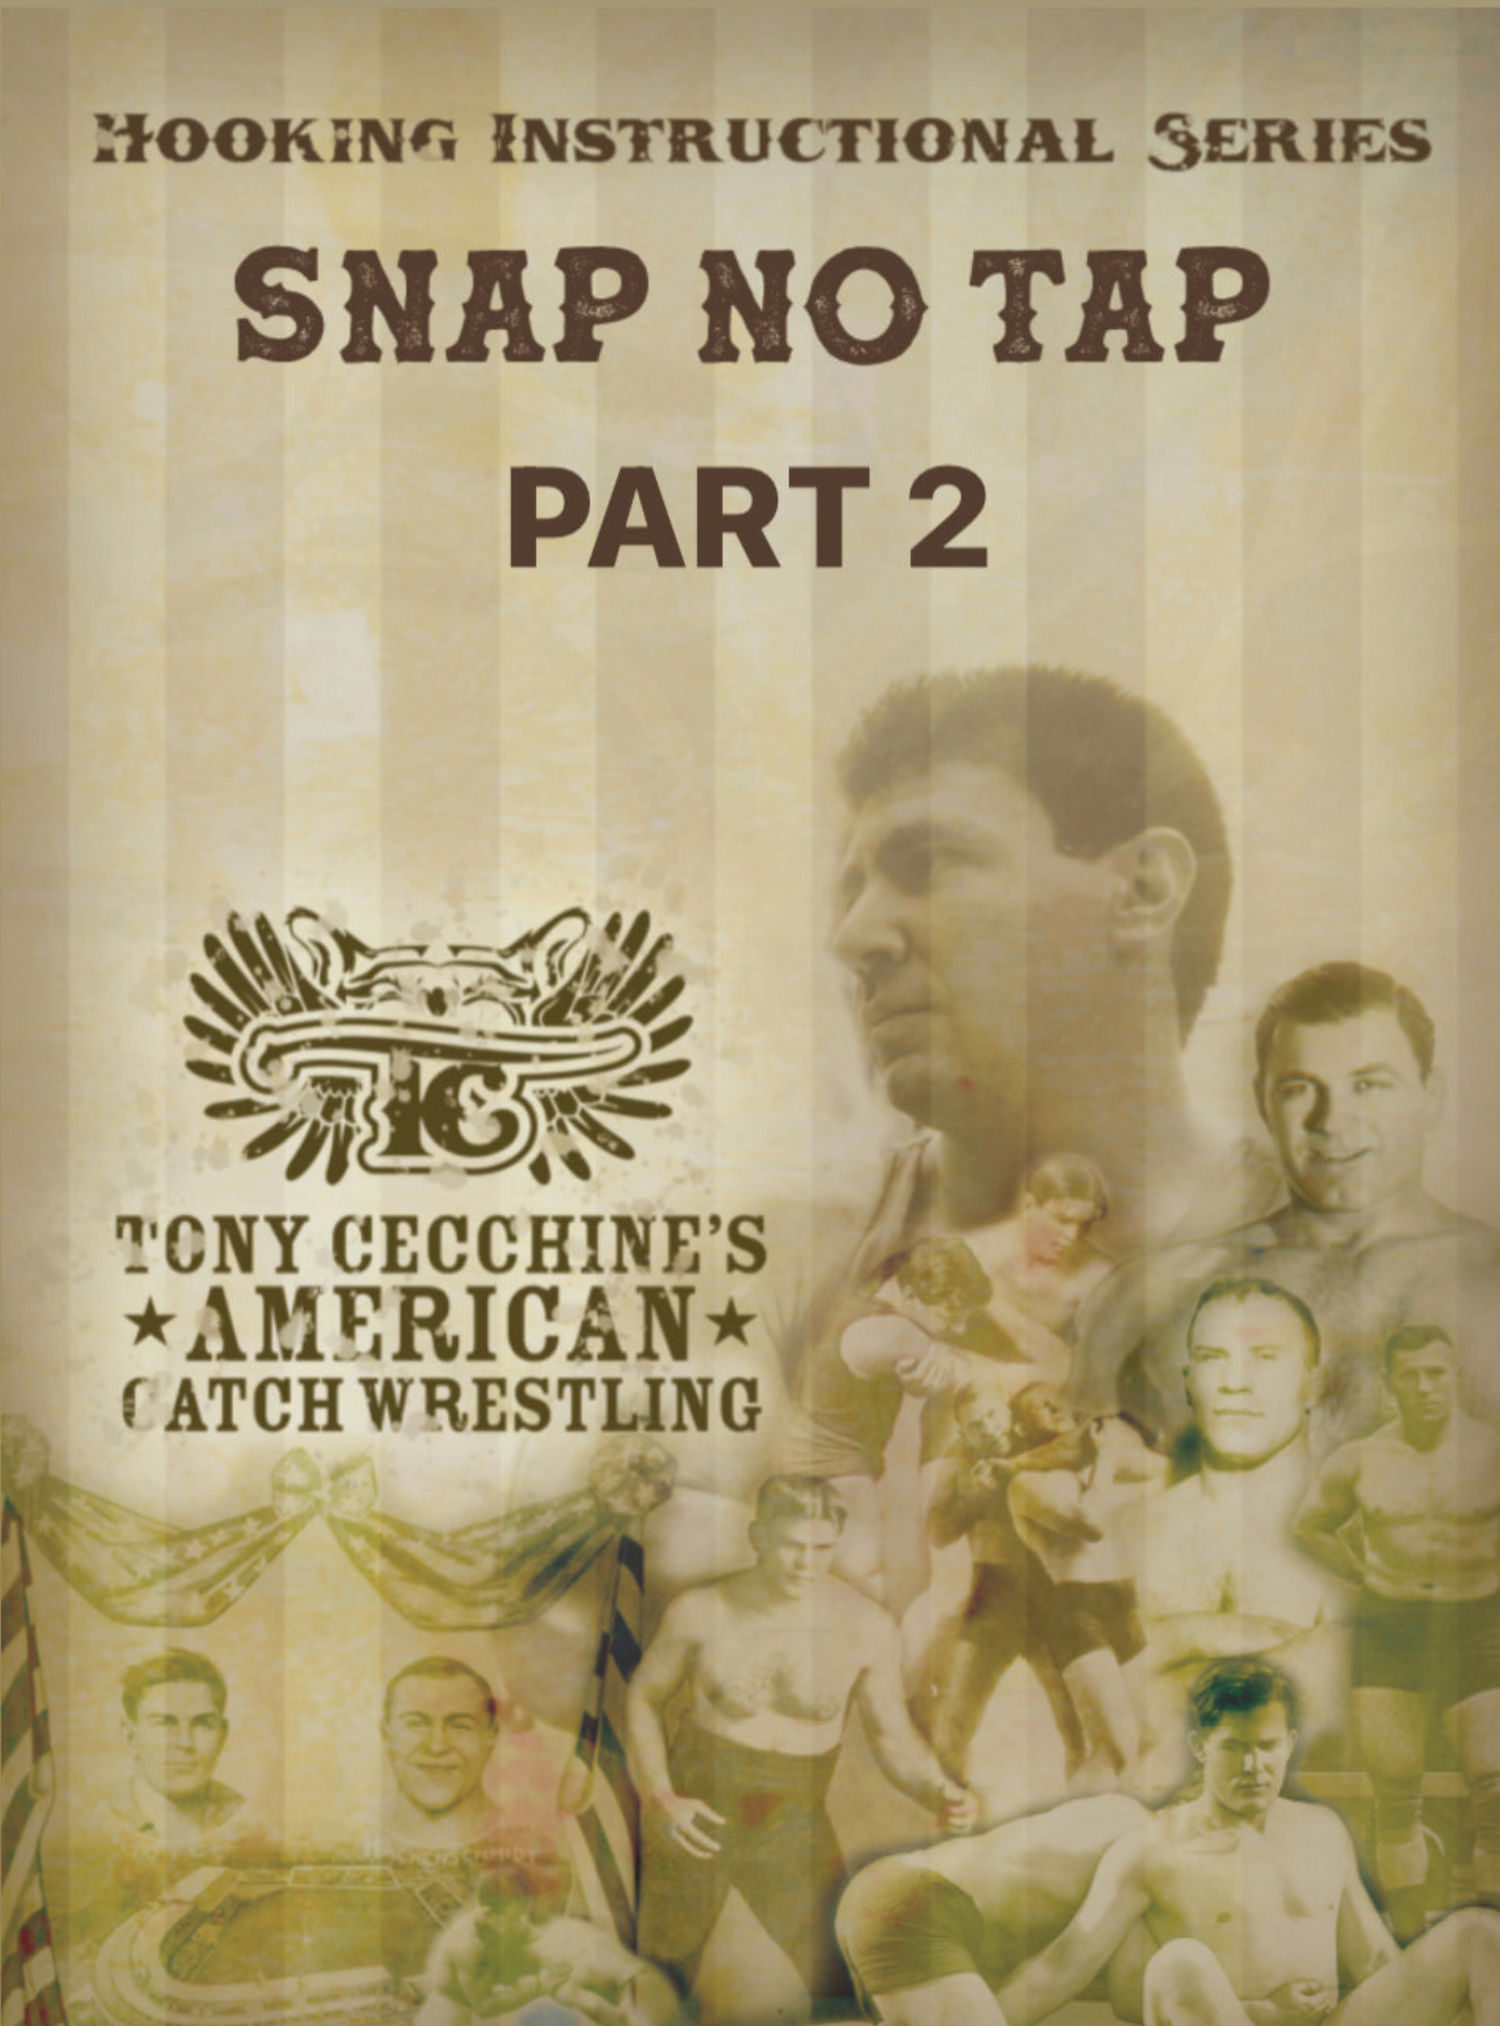 Snap No Tap Serie 2 con Tony Cecchine (Bajo demanda)